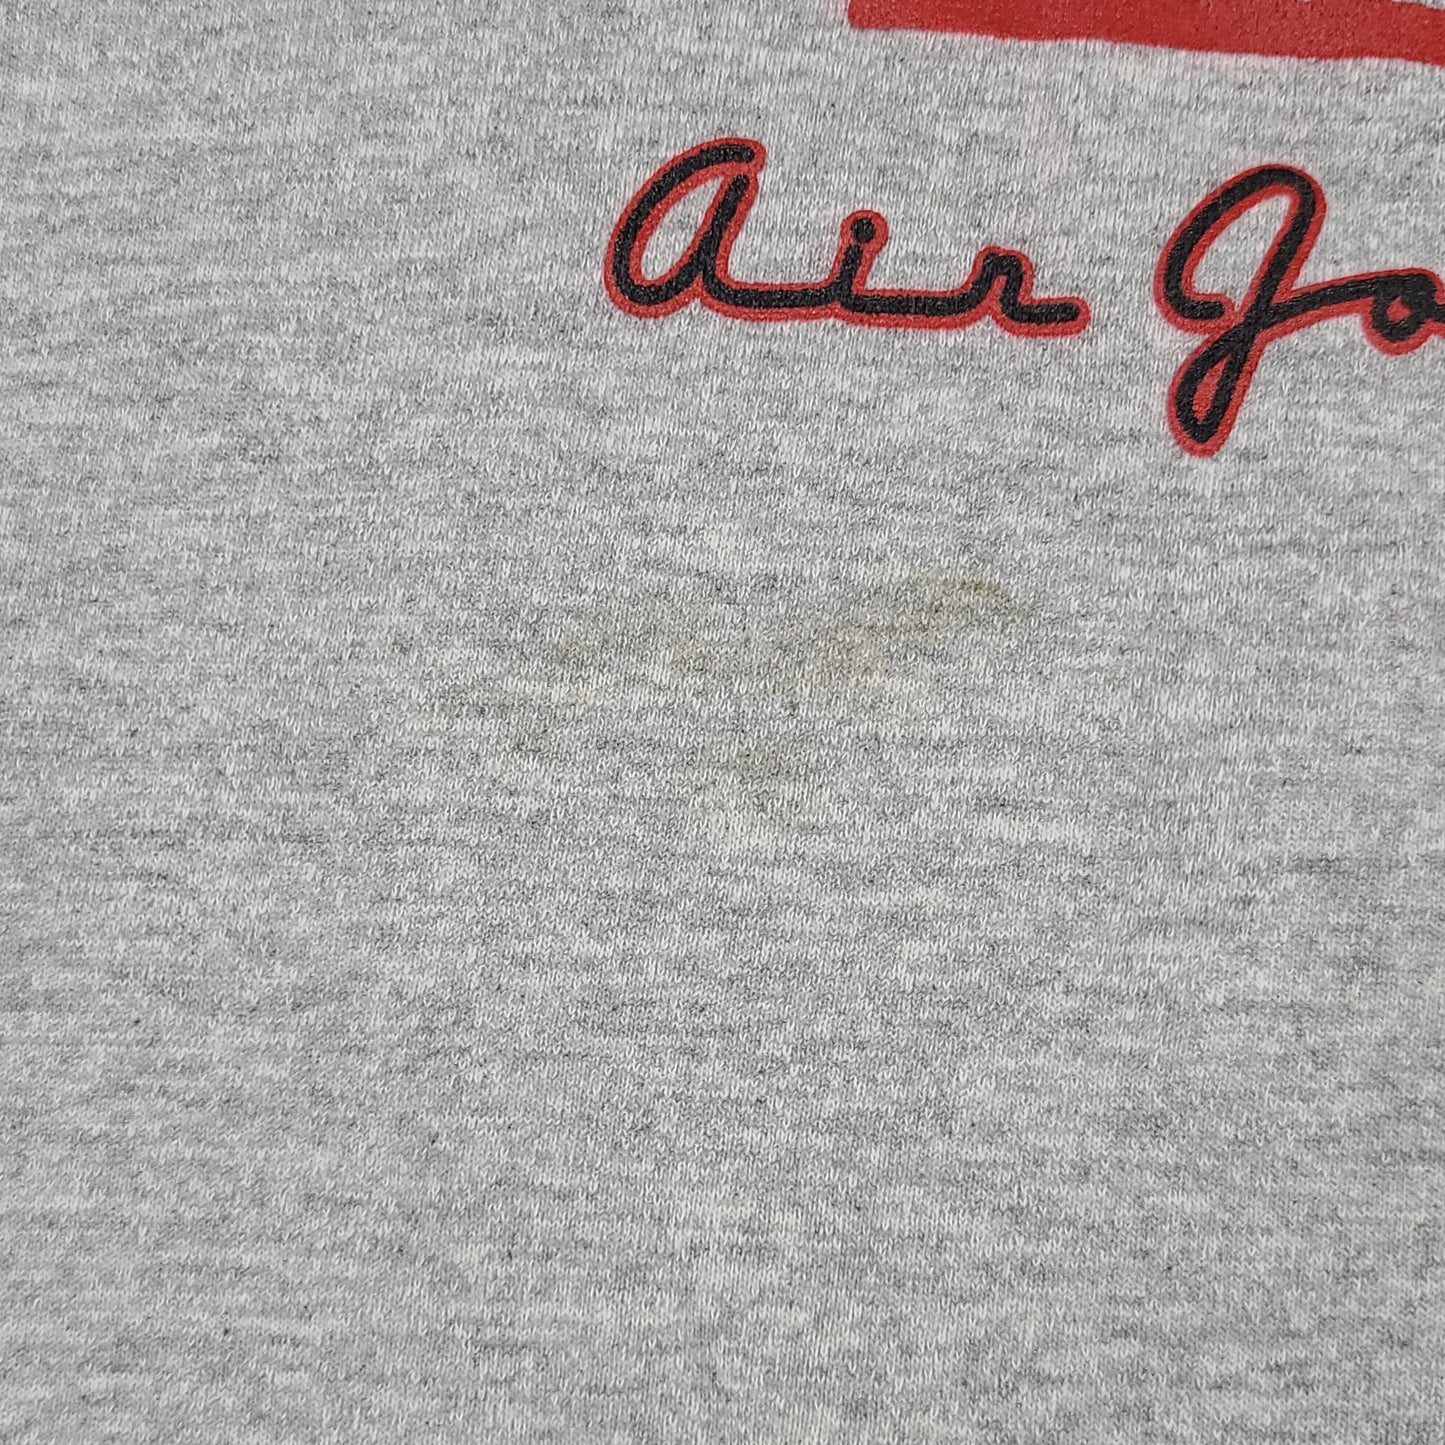 Vintage Nike Air Jordan Gray Youth Sweatshirt